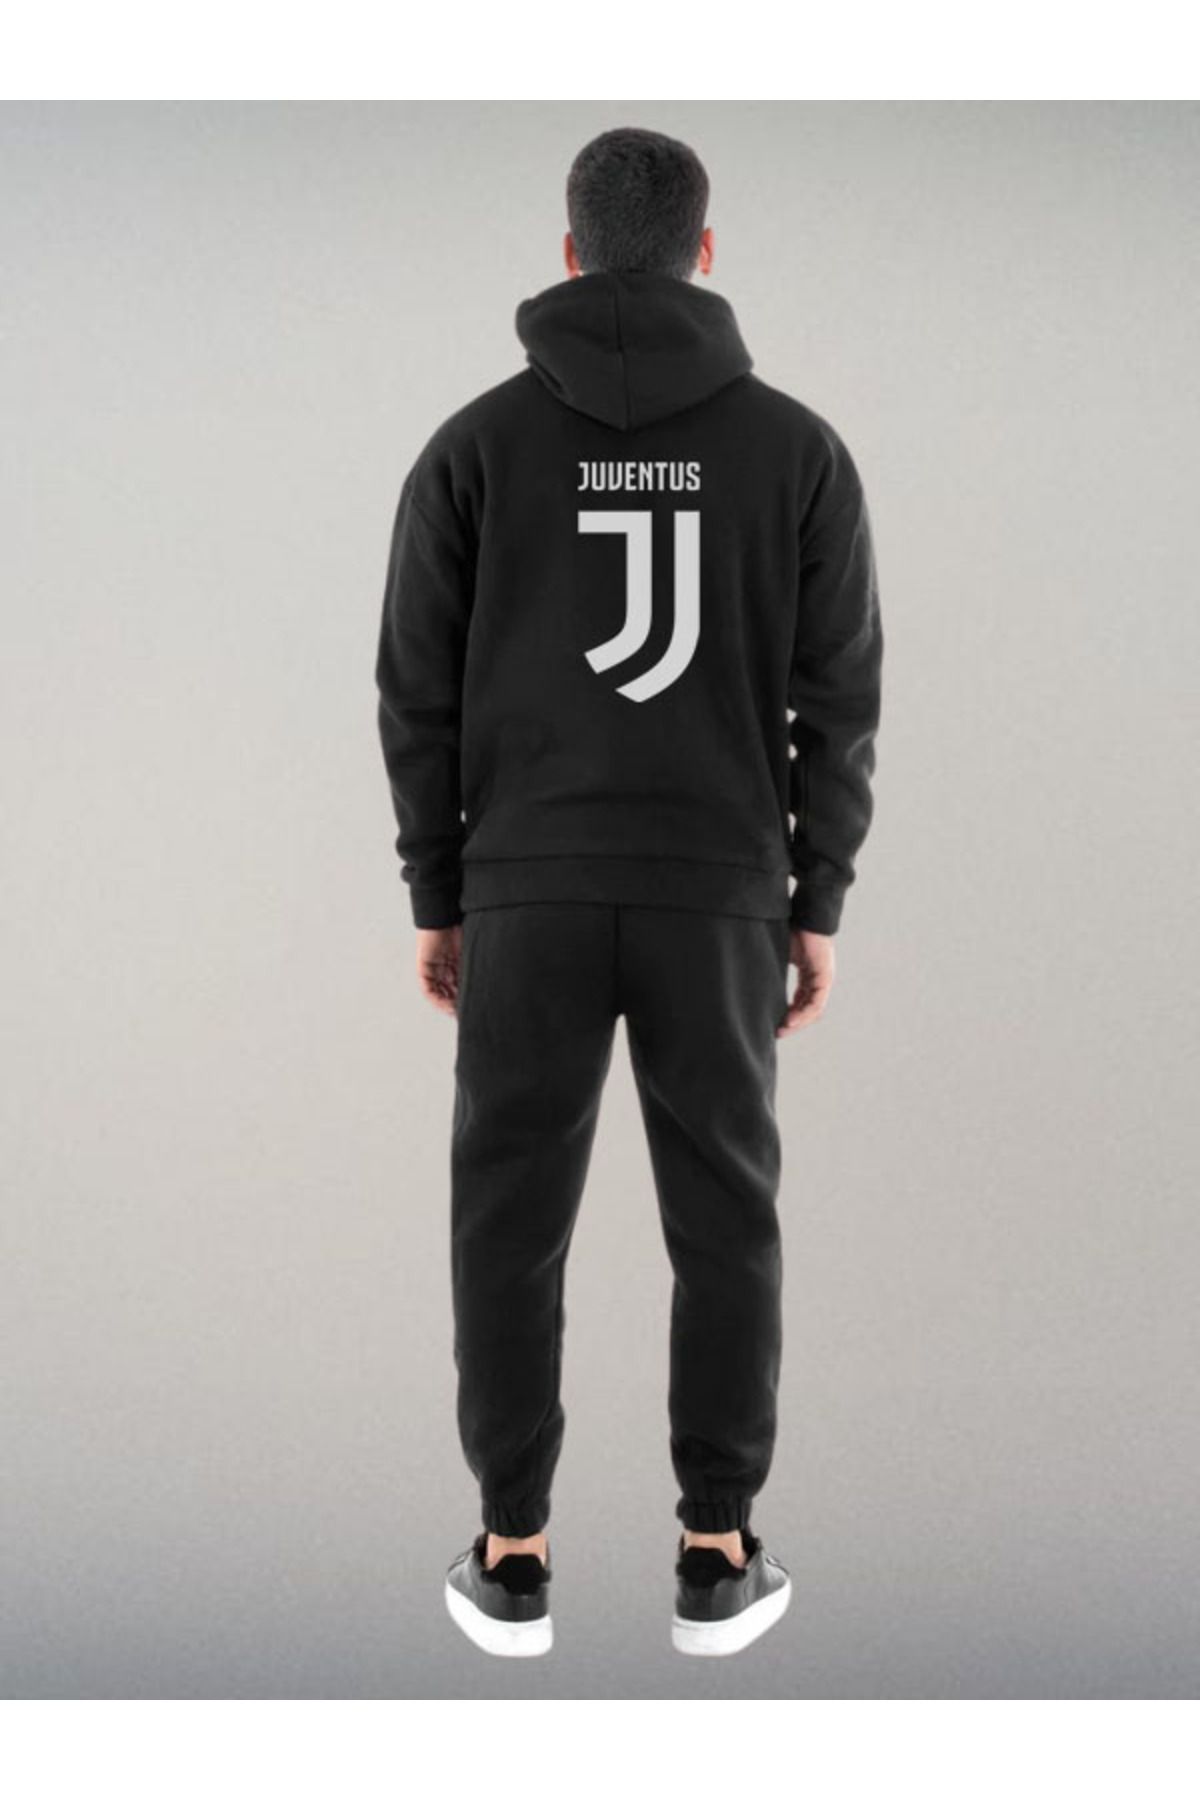 Darkia Juventus Futbol Takımı Özel Tasarım Baskılı Kapşonlu Sweatshirt Hoodie Spor Eşofman Takımı